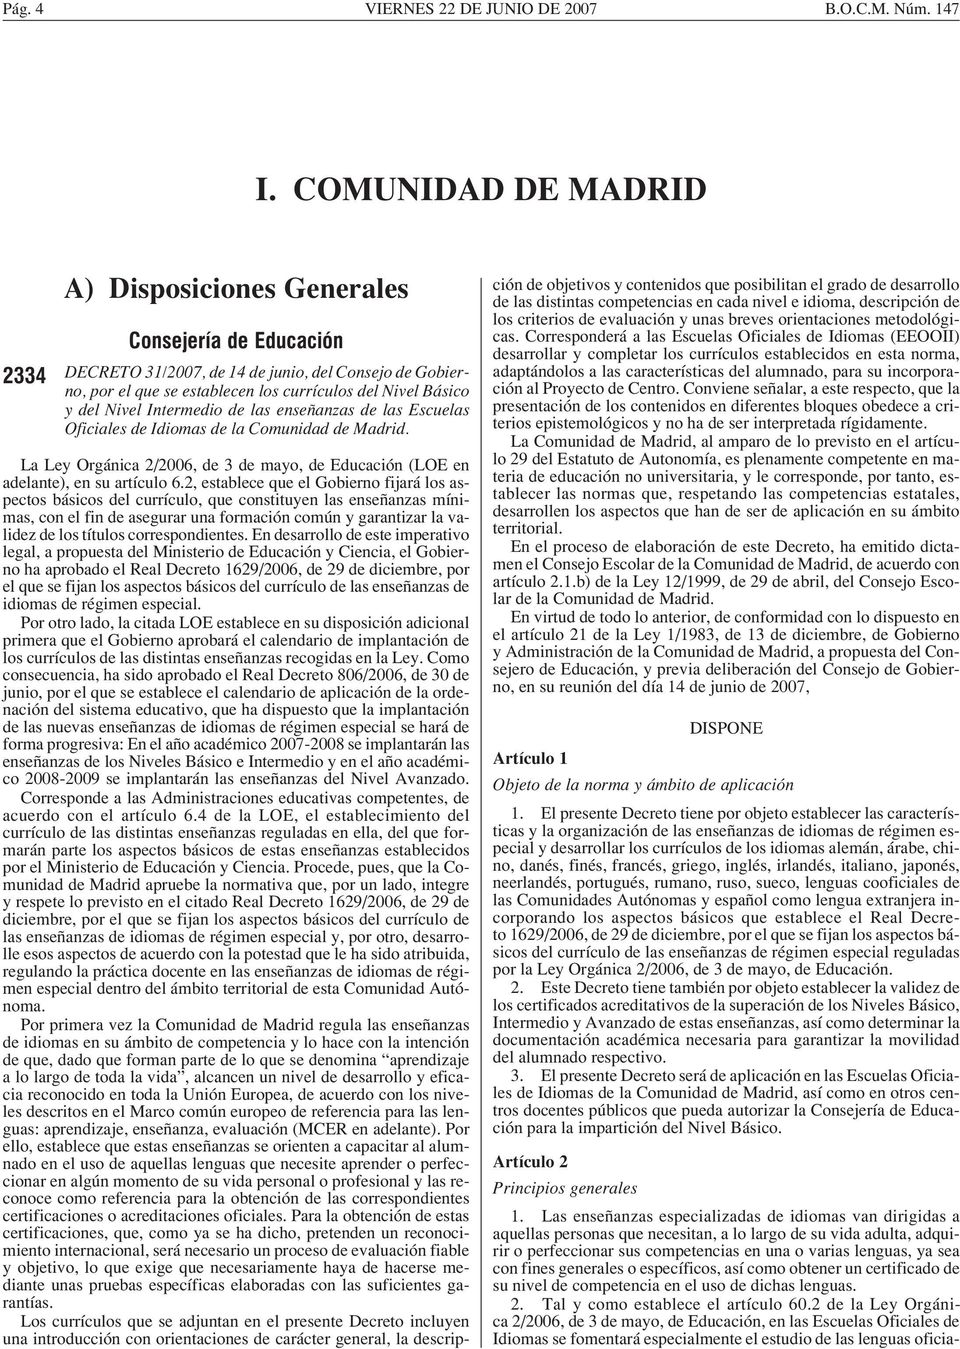 Nivel Intermedio de las enseñanzas de las Escuelas Oficiales de Idiomas de la Comunidad de Madrid. La Ley Orgánica 2/2006, de 3 de mayo, de Educación (LOE en adelante), en su artículo 6.